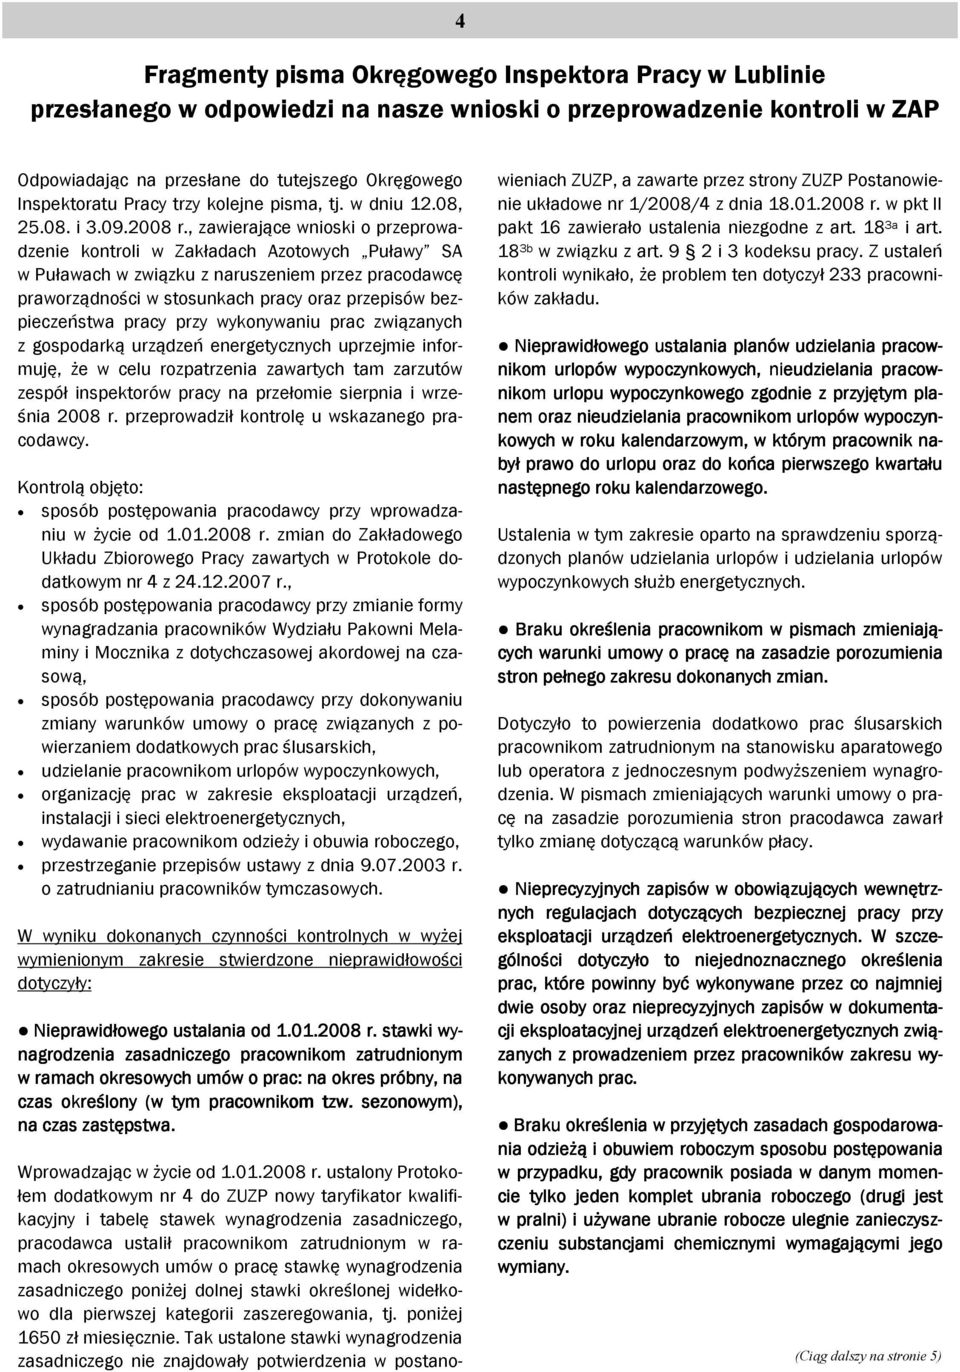 , zawierające wnioski o przeprowadzenie kontroli w Zakładach Azotowych Puławy SA w Puławach w związku z naruszeniem przez pracodawcę praworządności w stosunkach pracy oraz przepisów bezpieczeństwa